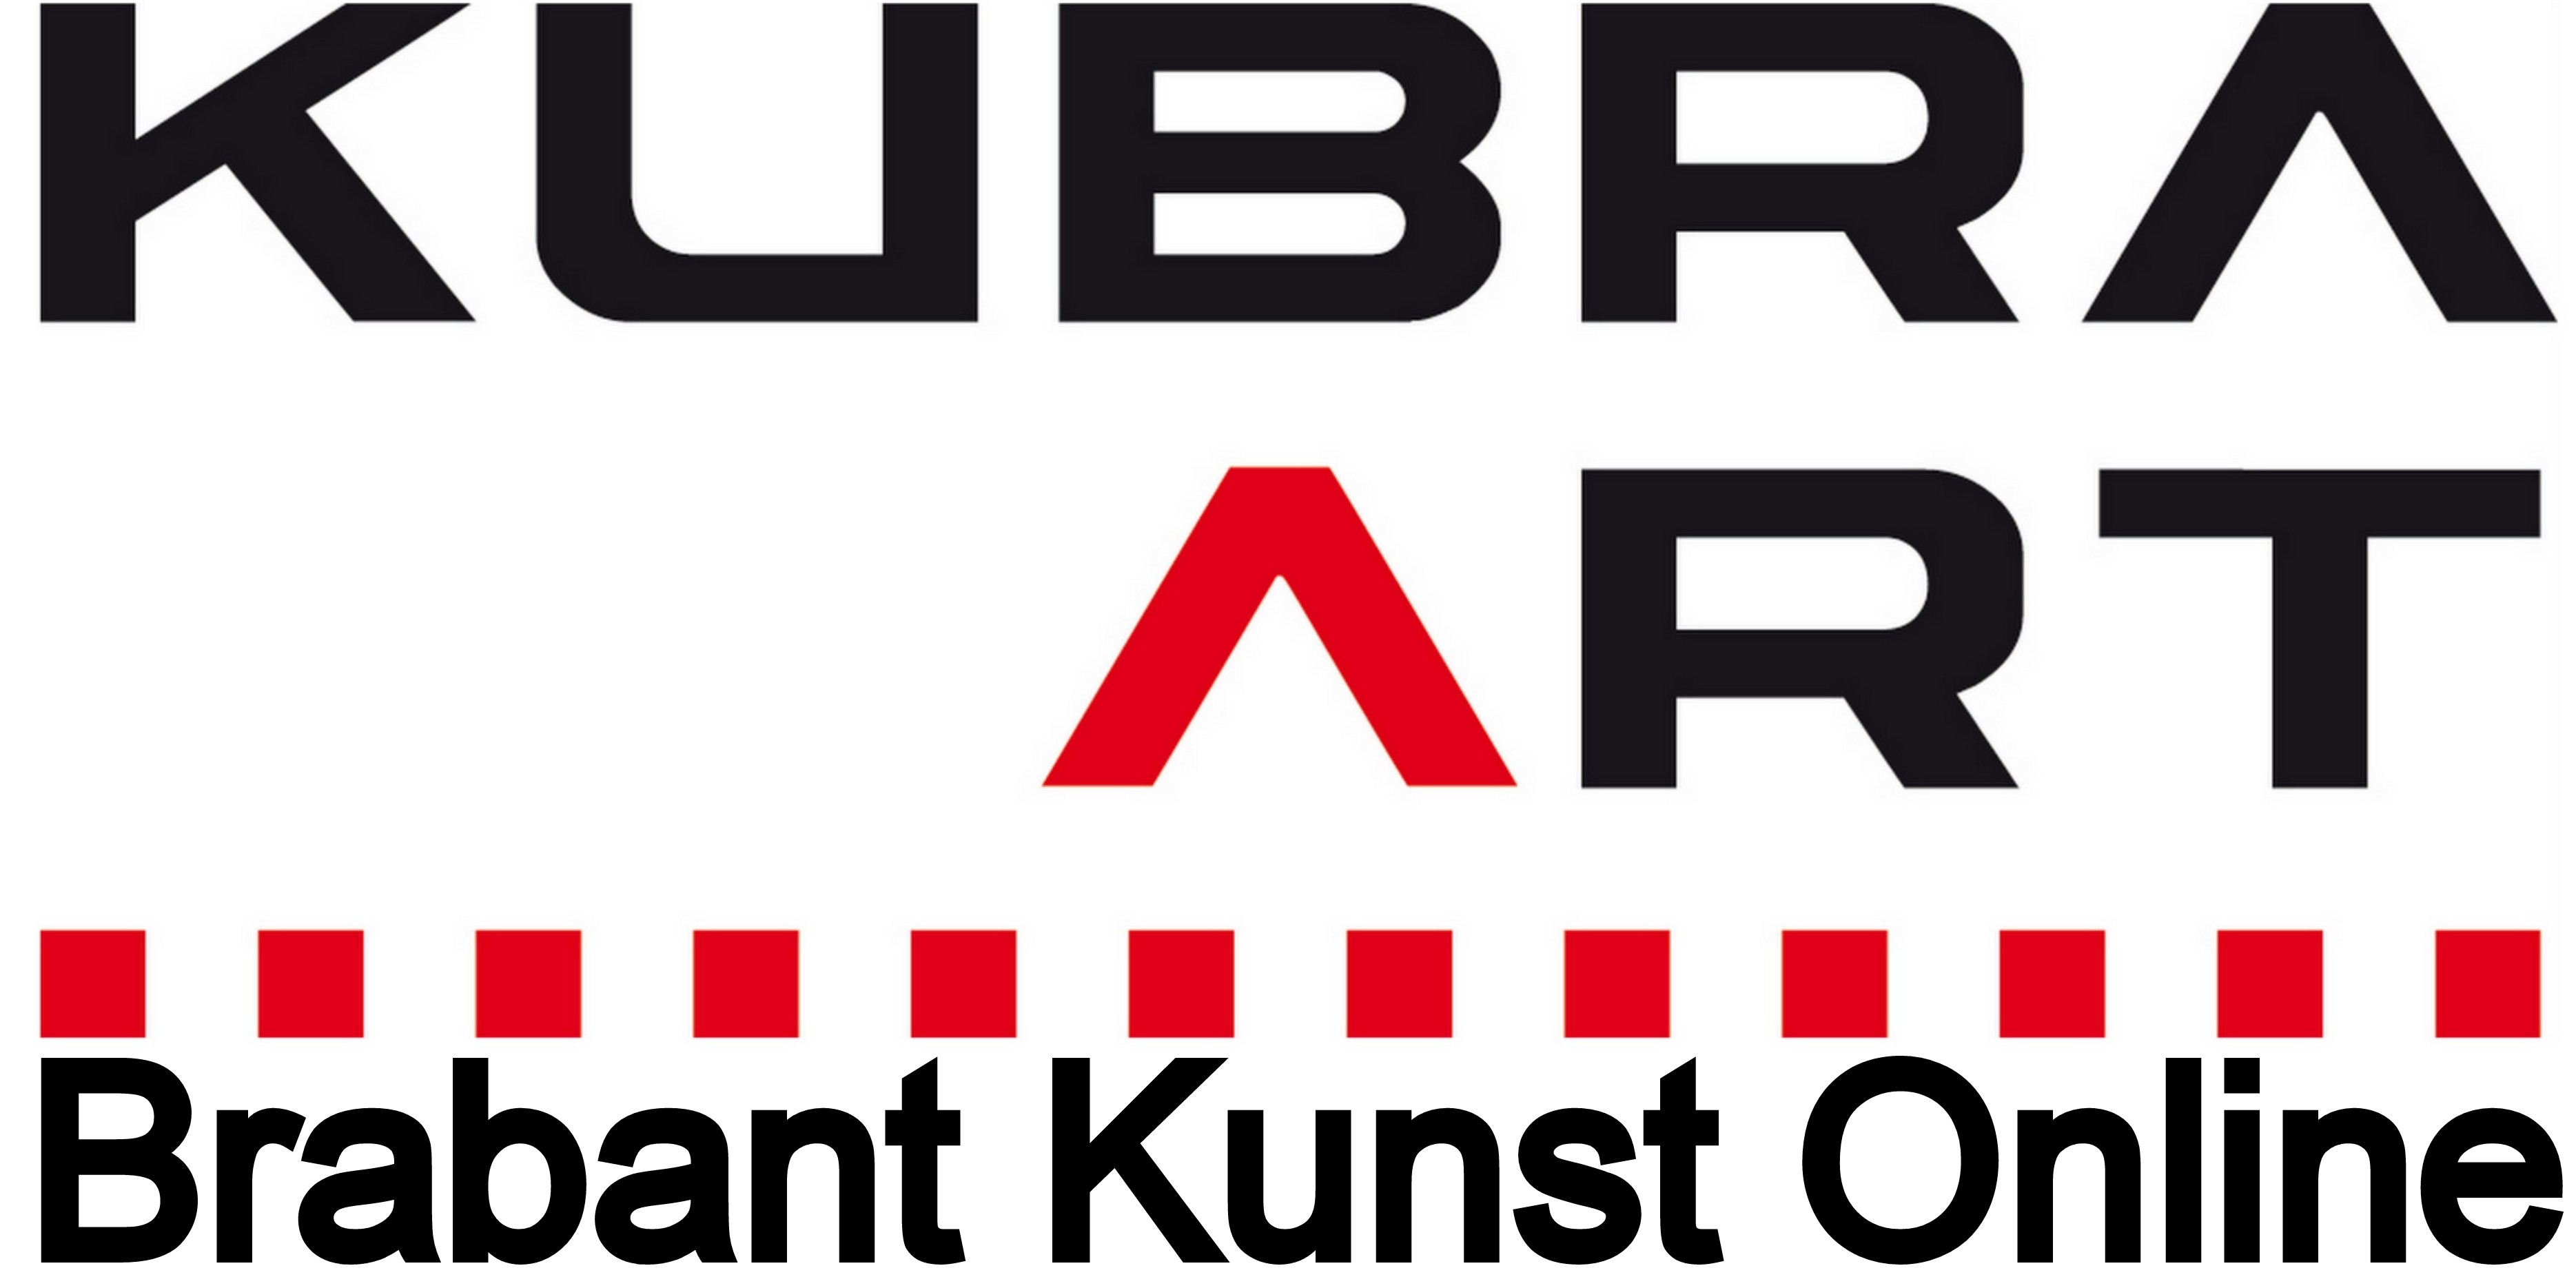 Welkom bij Brabant-Kunst-Online een initiatief van stichting KuBra